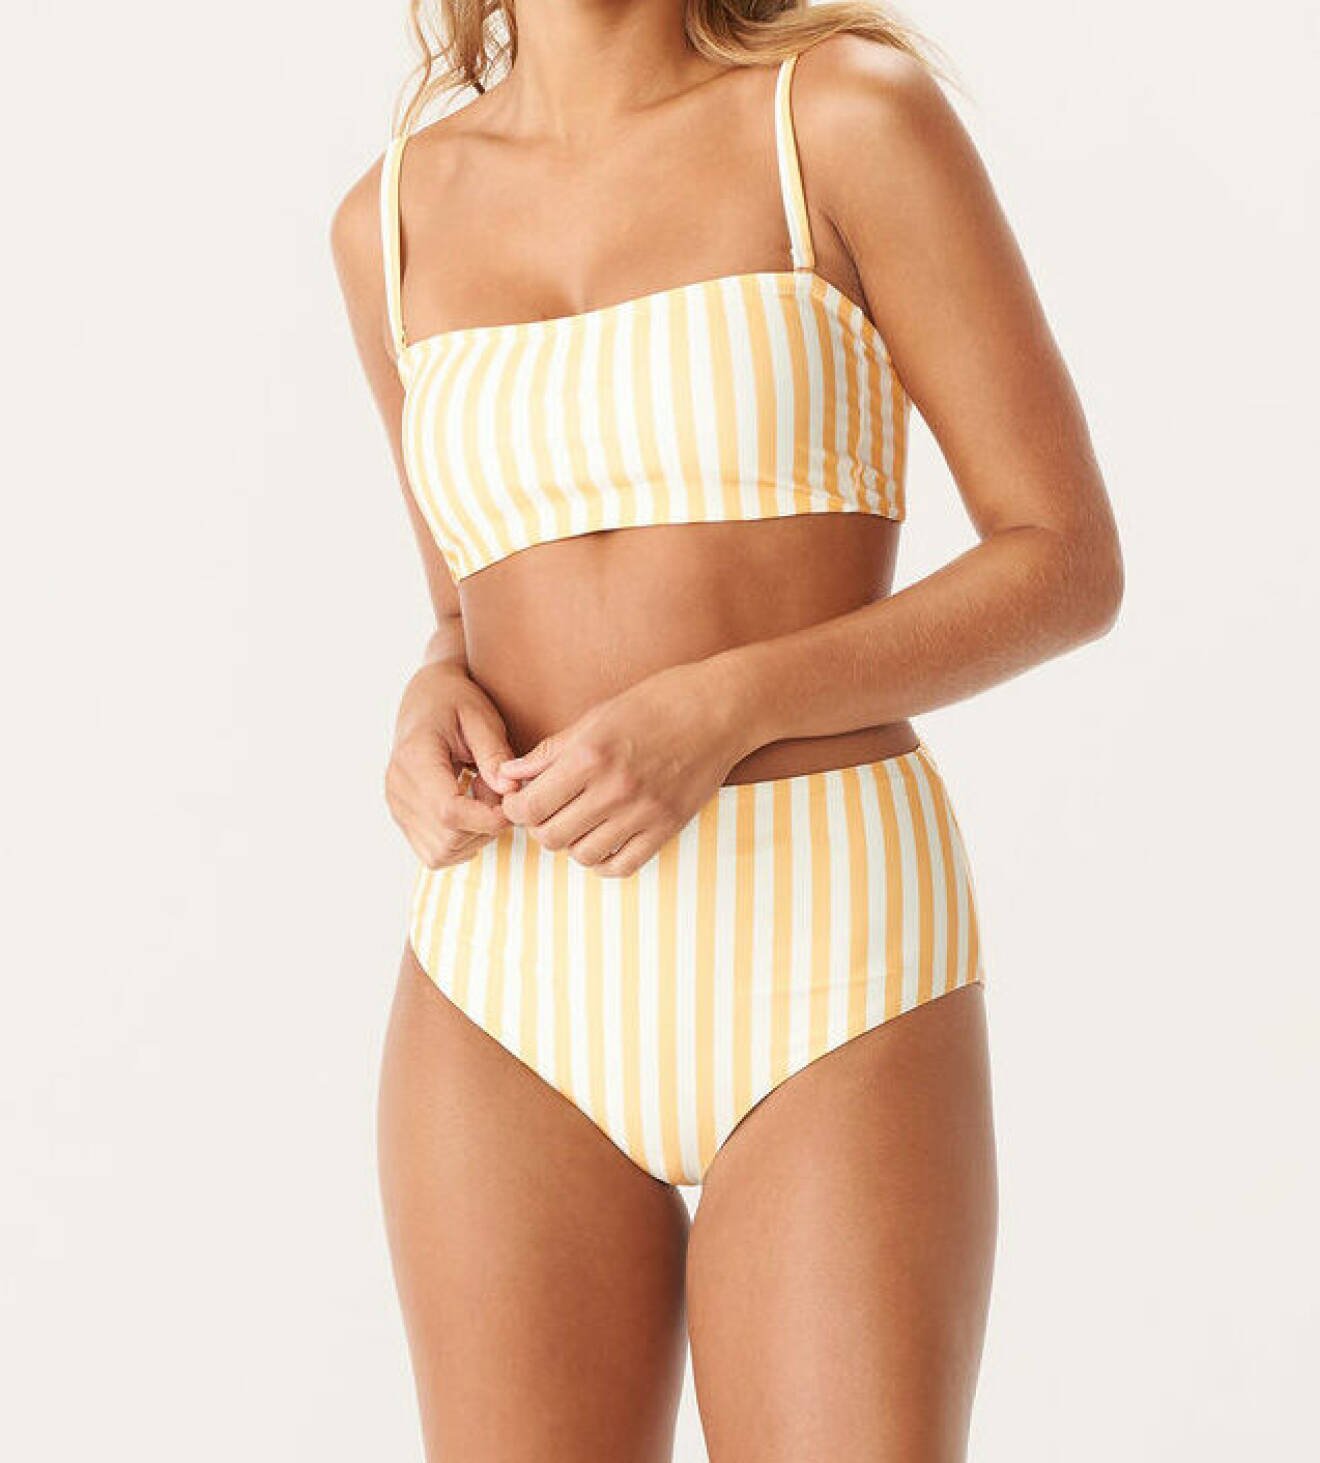 modenyheter dam våren 2022 – gul och vit randig bikini med hög midja